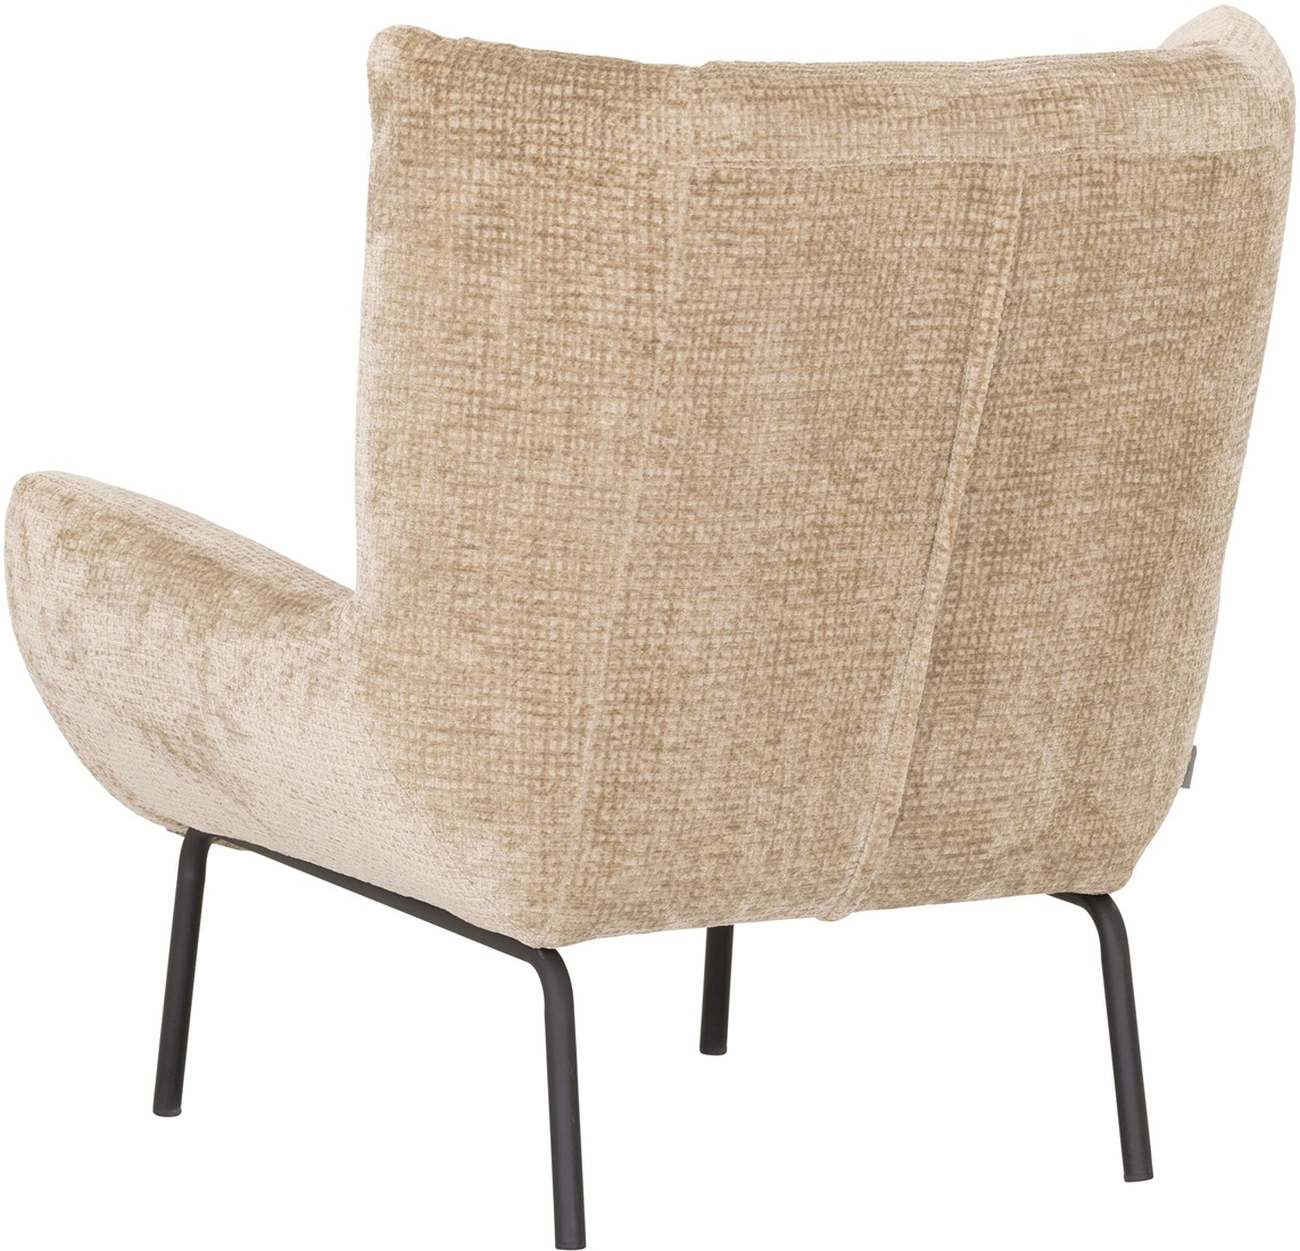 Der Sessel Astro überzeugt mit seinem modernen Design. Gefertigt wurde er aus Stoff, welcher einen Sand Farbton besitzt. Das Gestell ist aus Metall und hat eine schwarze Farbe. Der Sessel besitzt eine Größe von 97x92x96 cm.